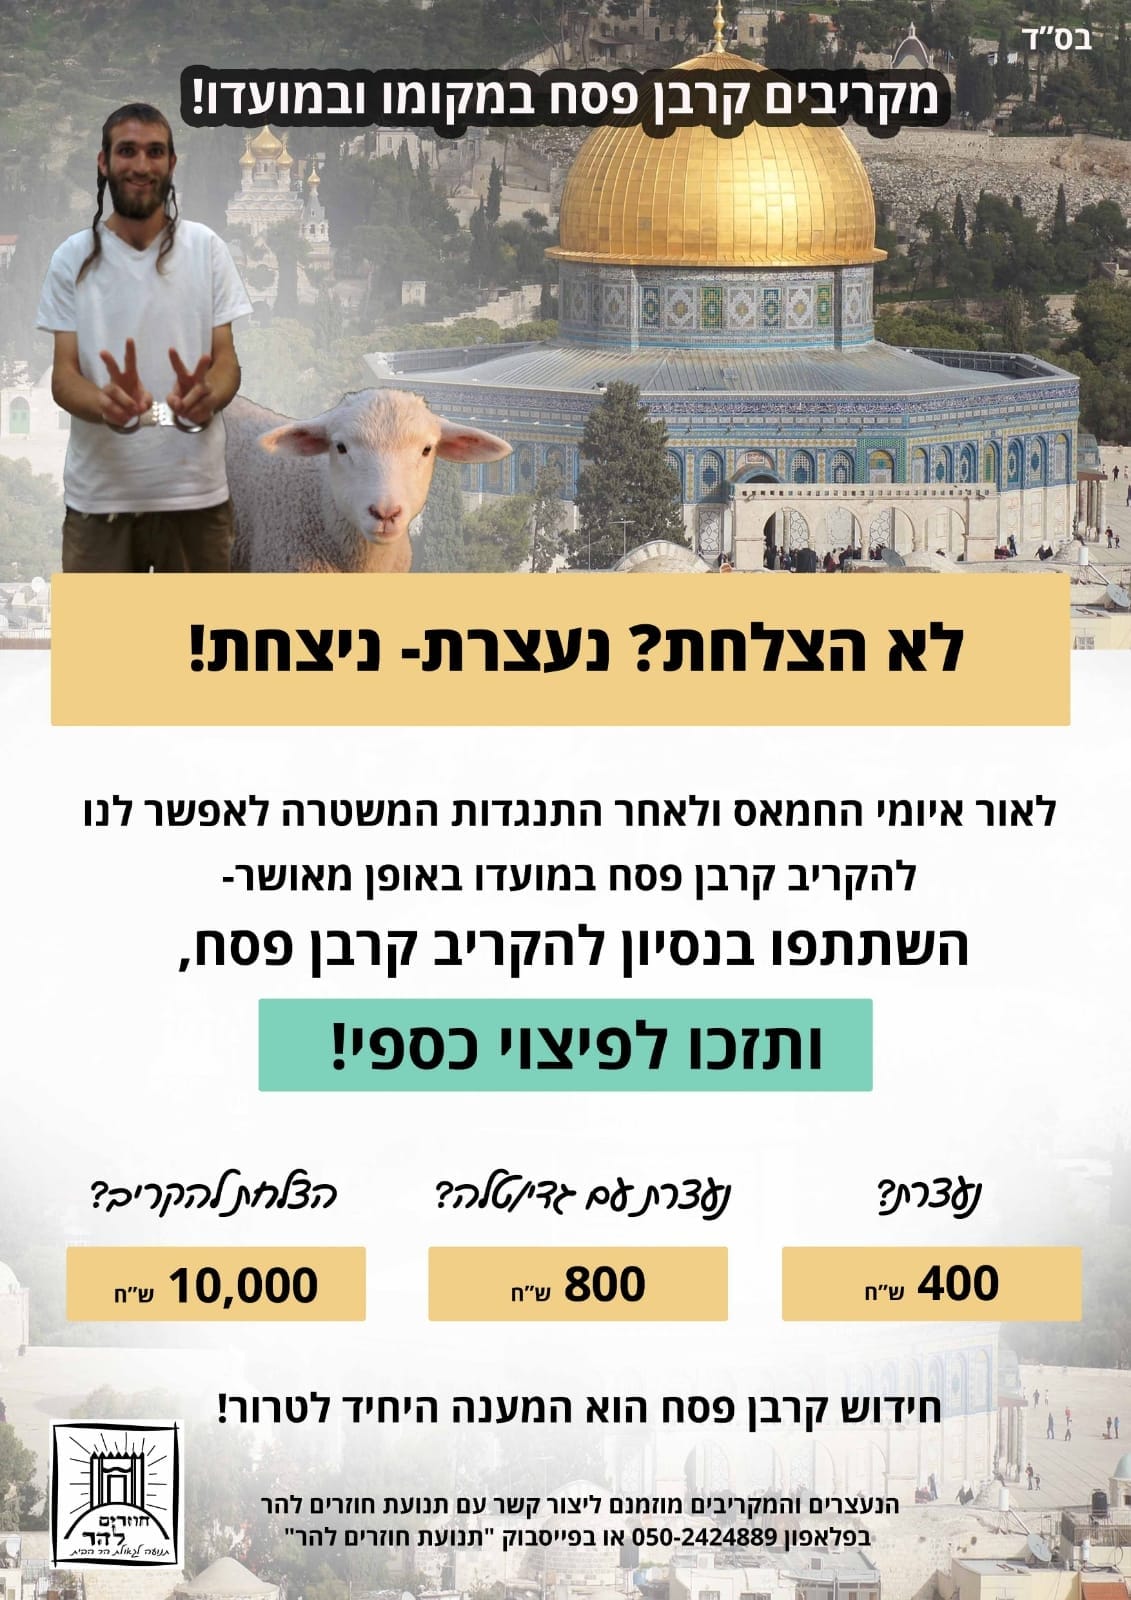 نشرت حركة "عائدون إلى جبل الهيكل" إعلانات تتضمّن مكافآت ماليّة